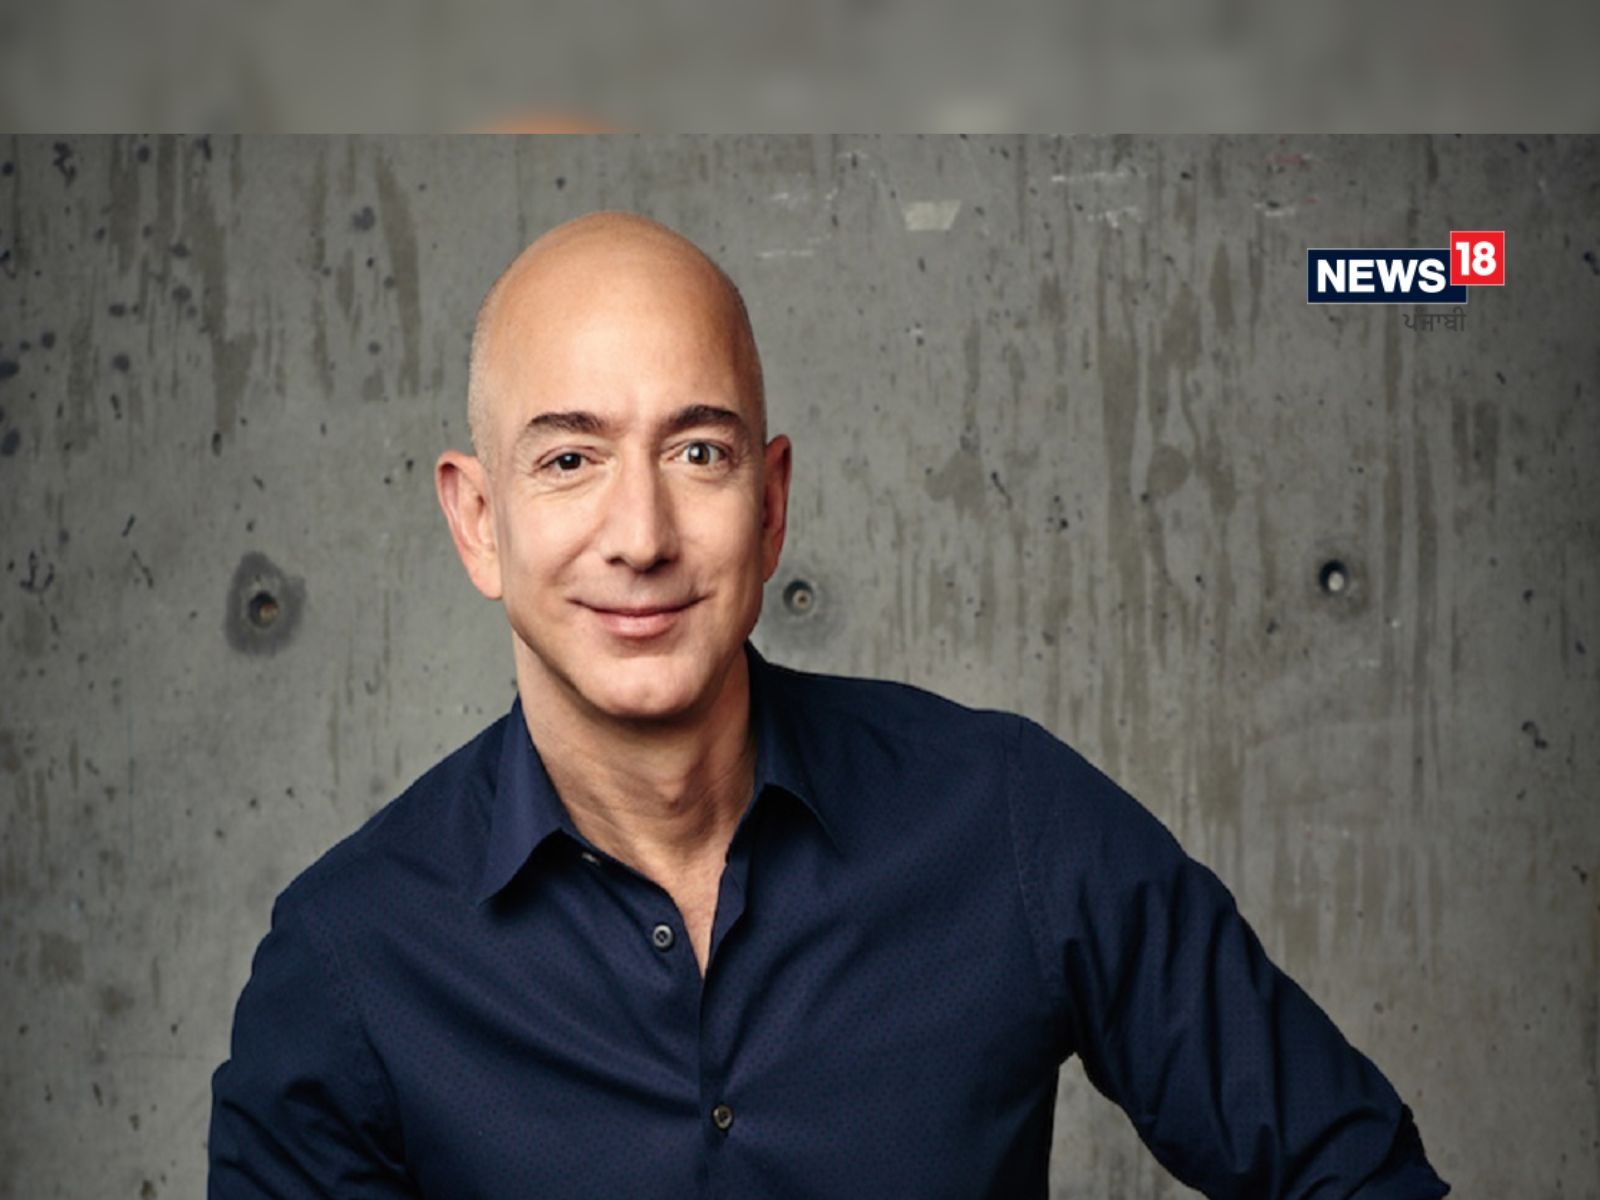 Amazon ਦੇ ਸੰਸਥਾਪਕ Jeff Bezos ਕਰਨਗੇ ਆਪਣੀ ਜਾਇਦਾਦ ਦਾਨ, ਜਾਣੋ ਬੇਜੋਸ ਦਾ ਬਿਆਨ